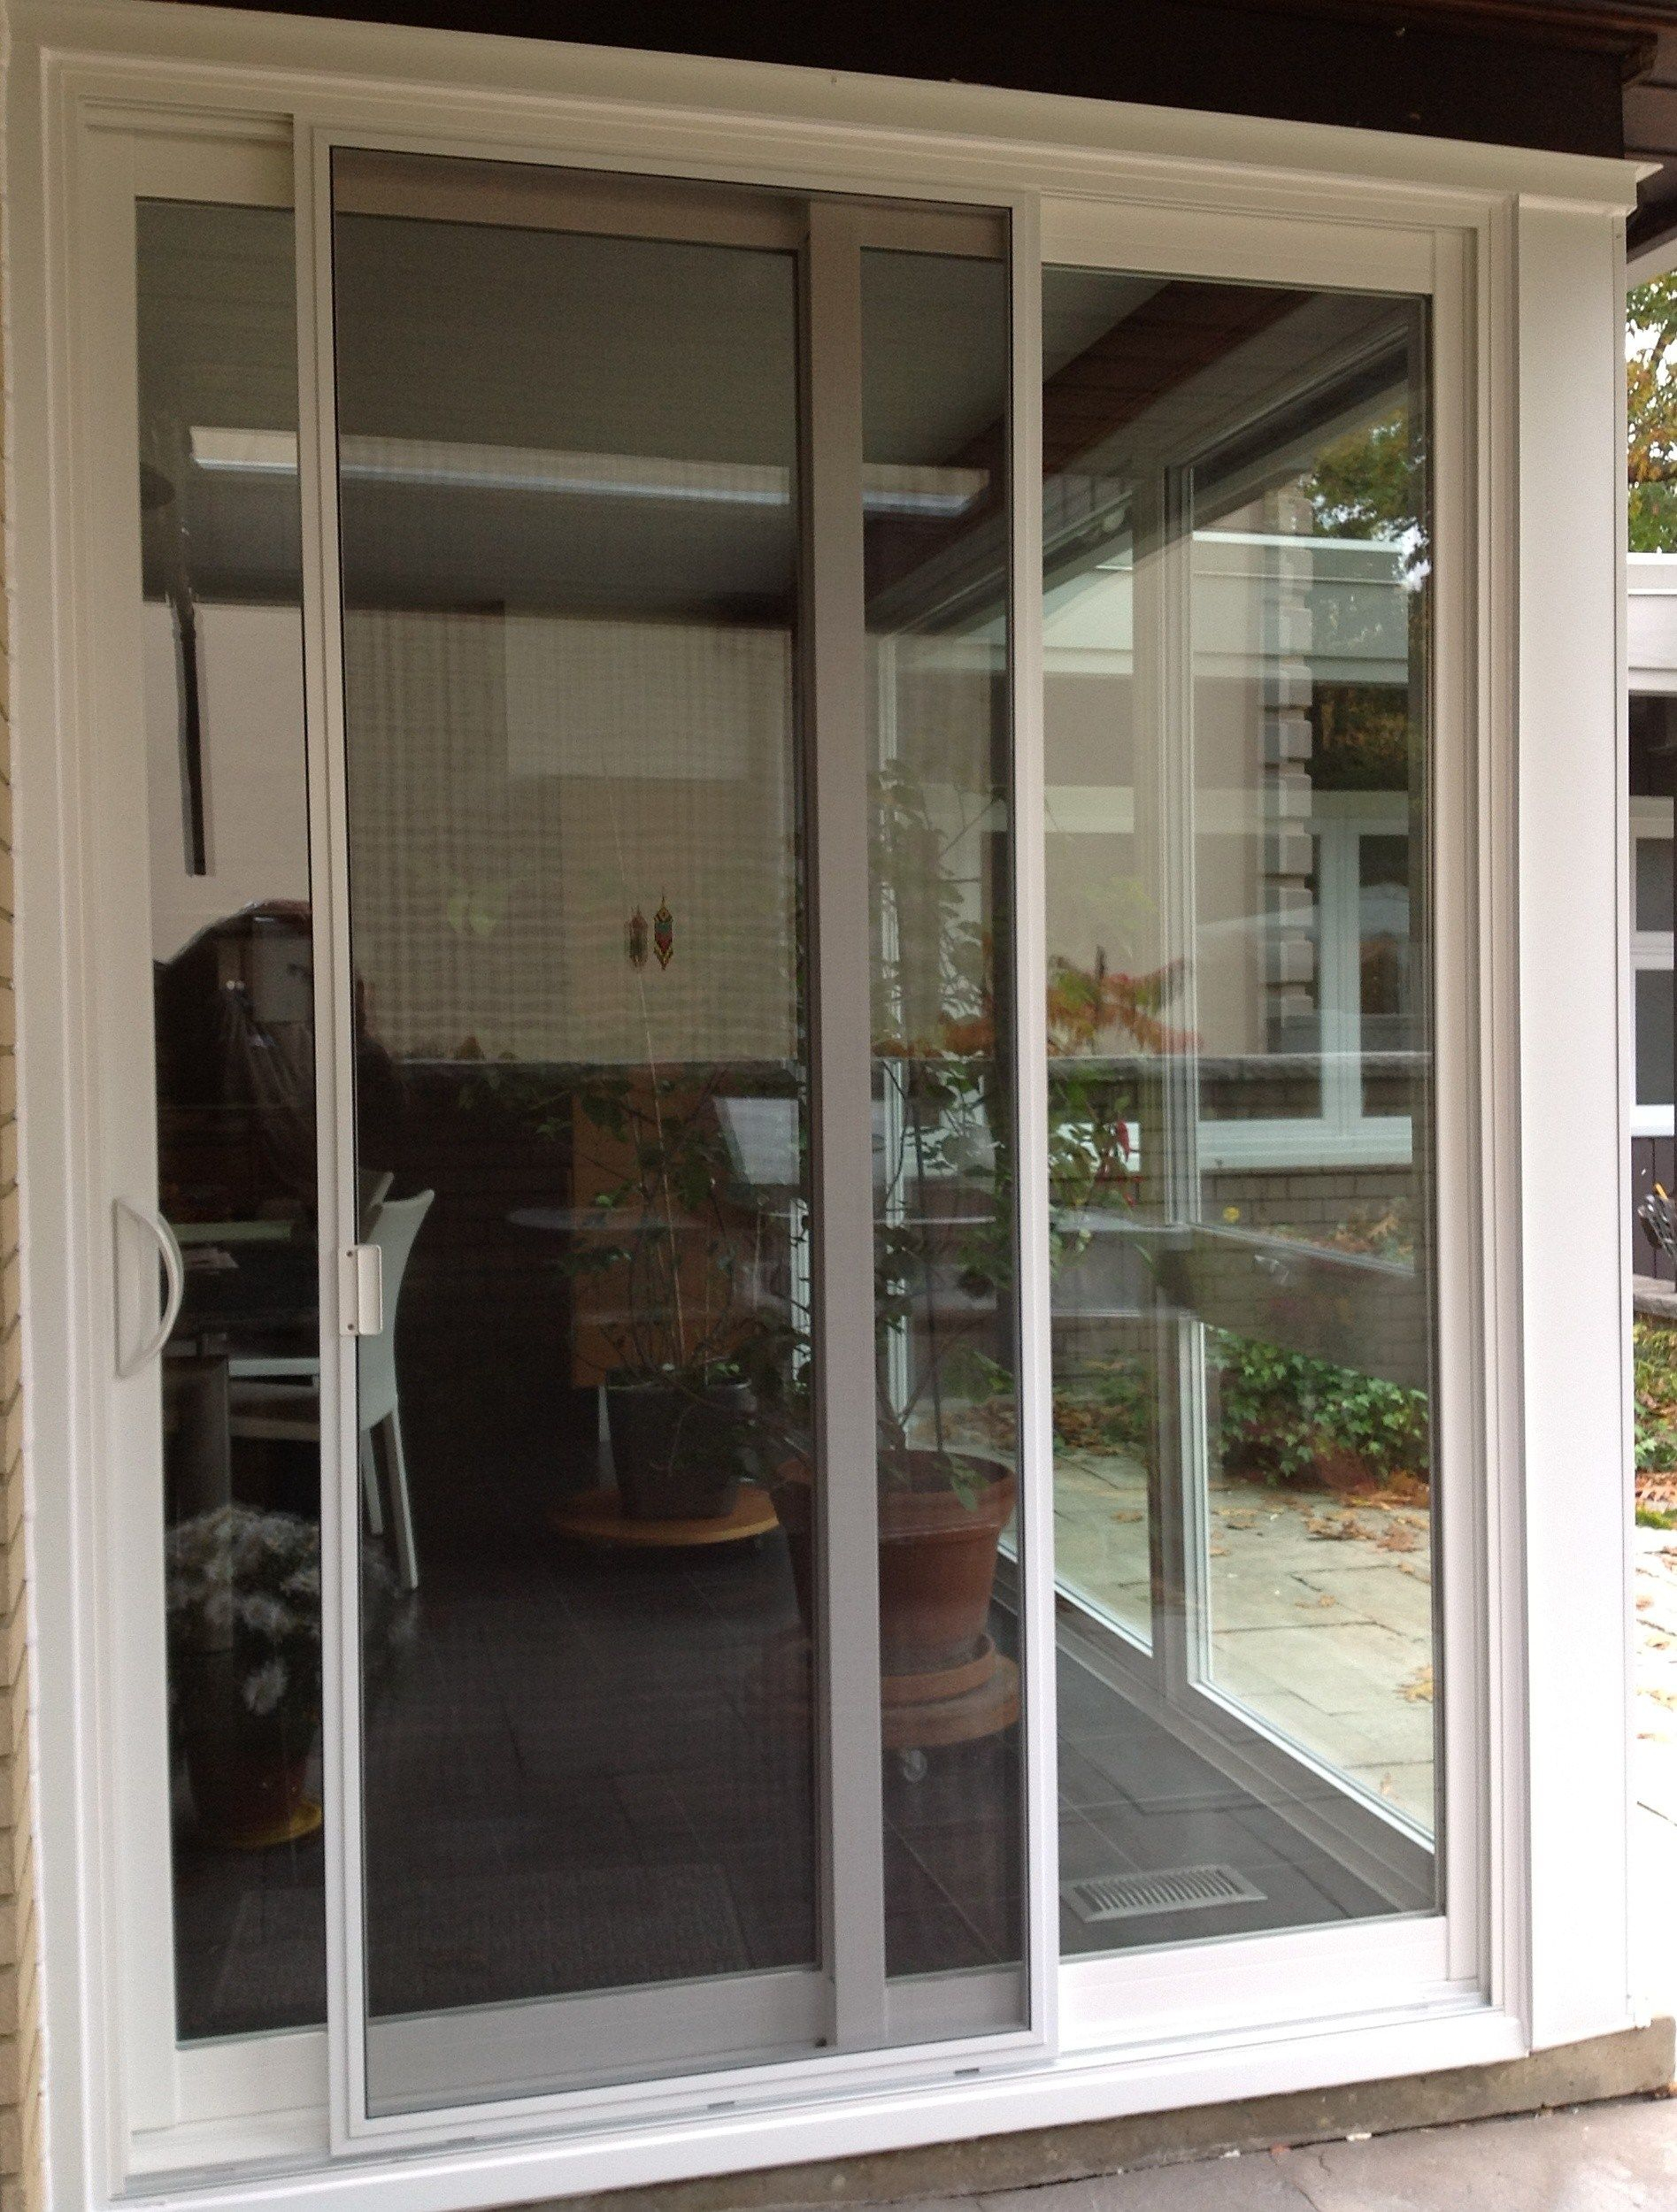 Best Of Door Handles For Sliding Glass Doors Home Decor regarding measurements 1895 X 2500